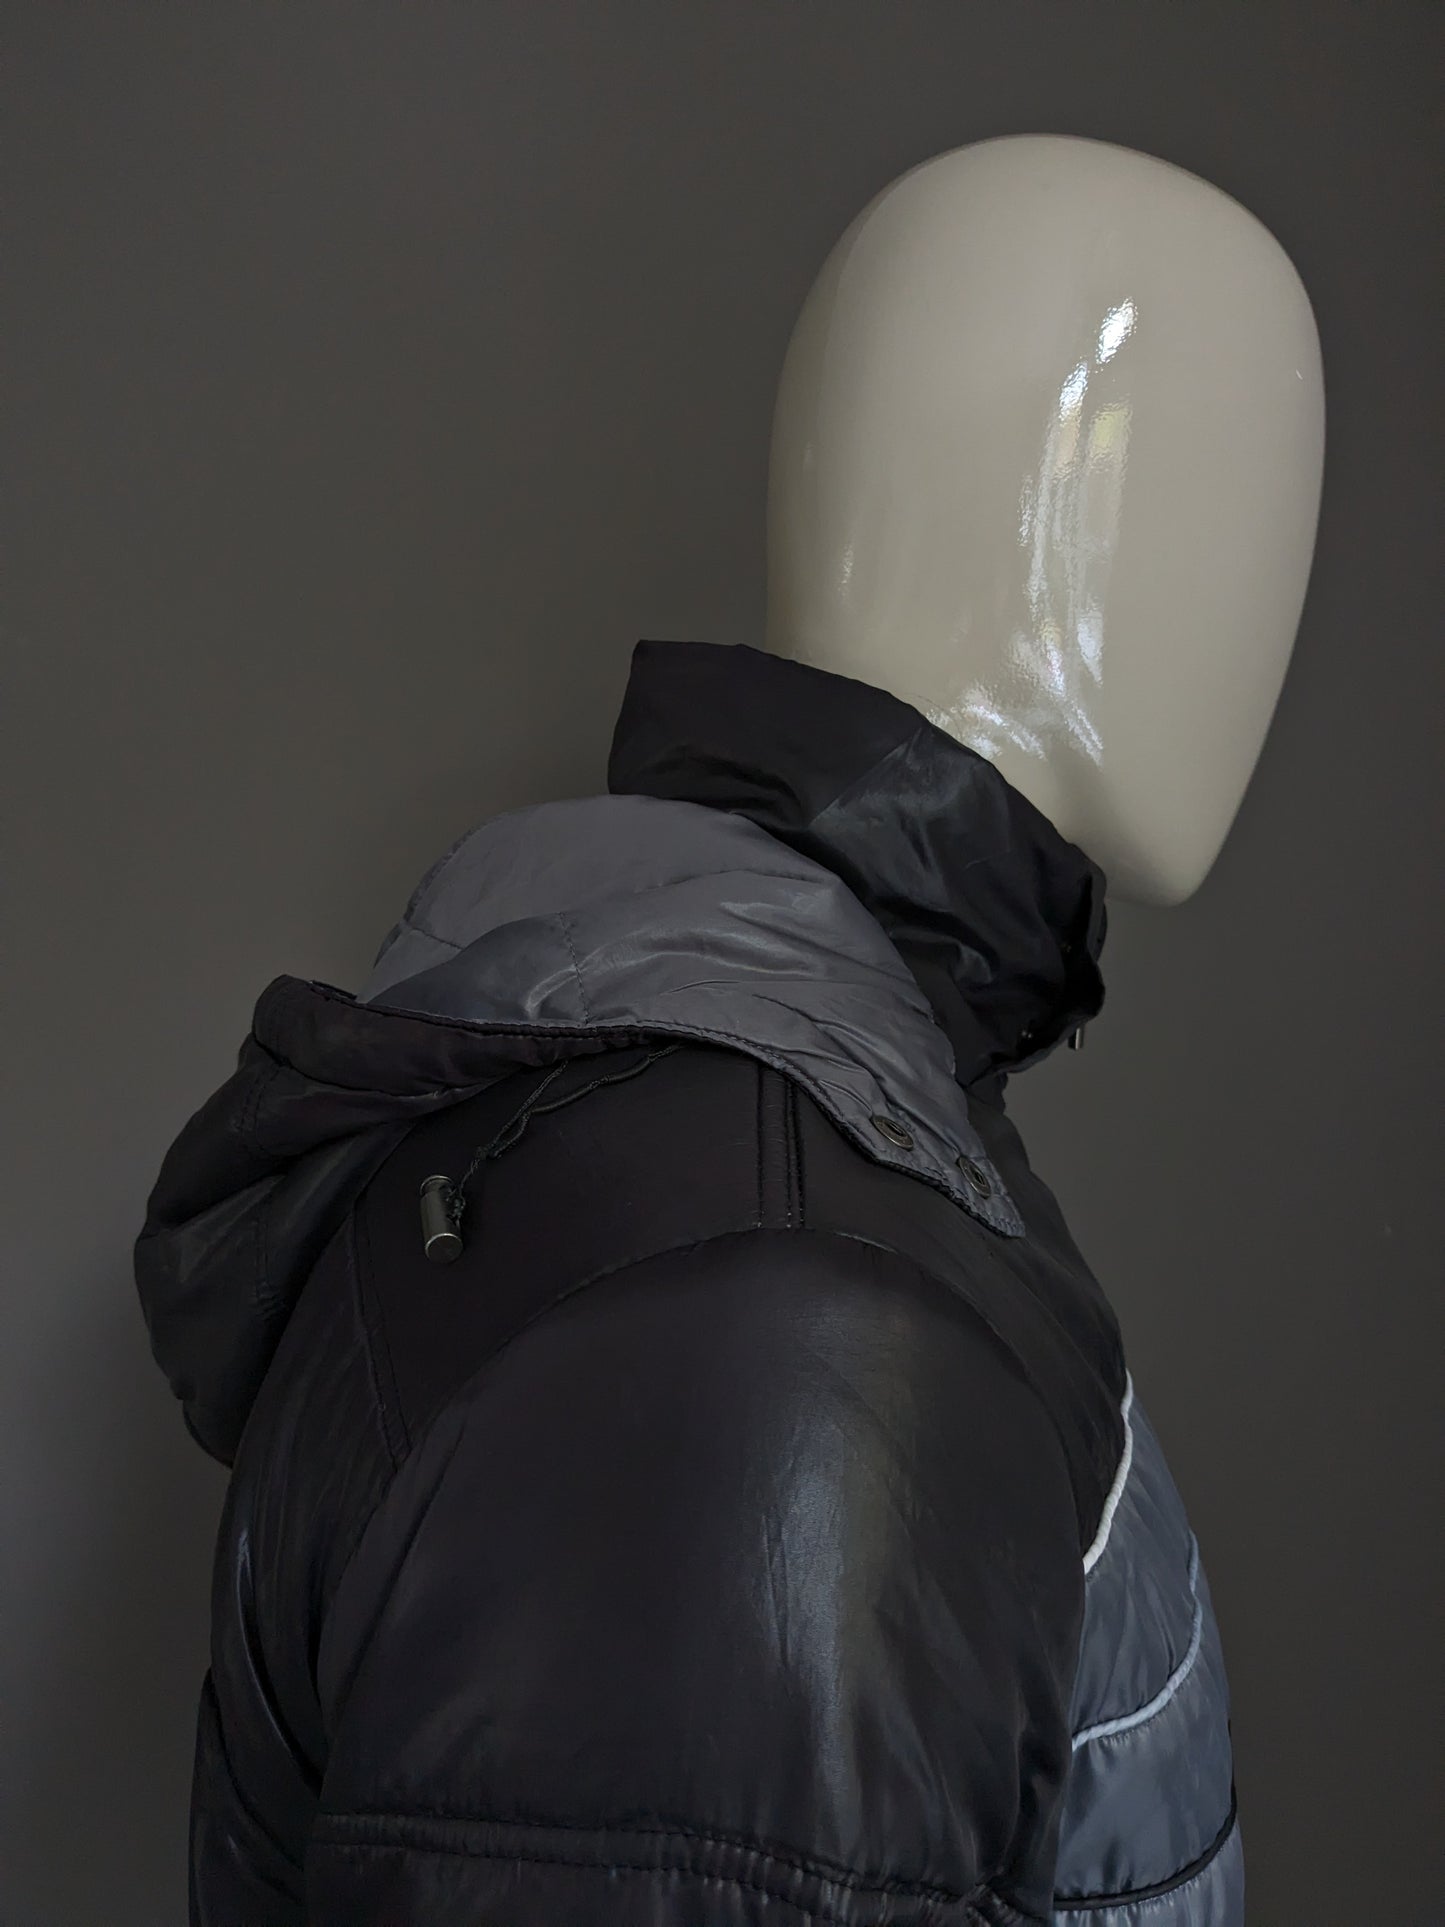 Le Coq Sportif matelassé veste d'hiver avec hotte de département. Couleur gris noir. Taille M.